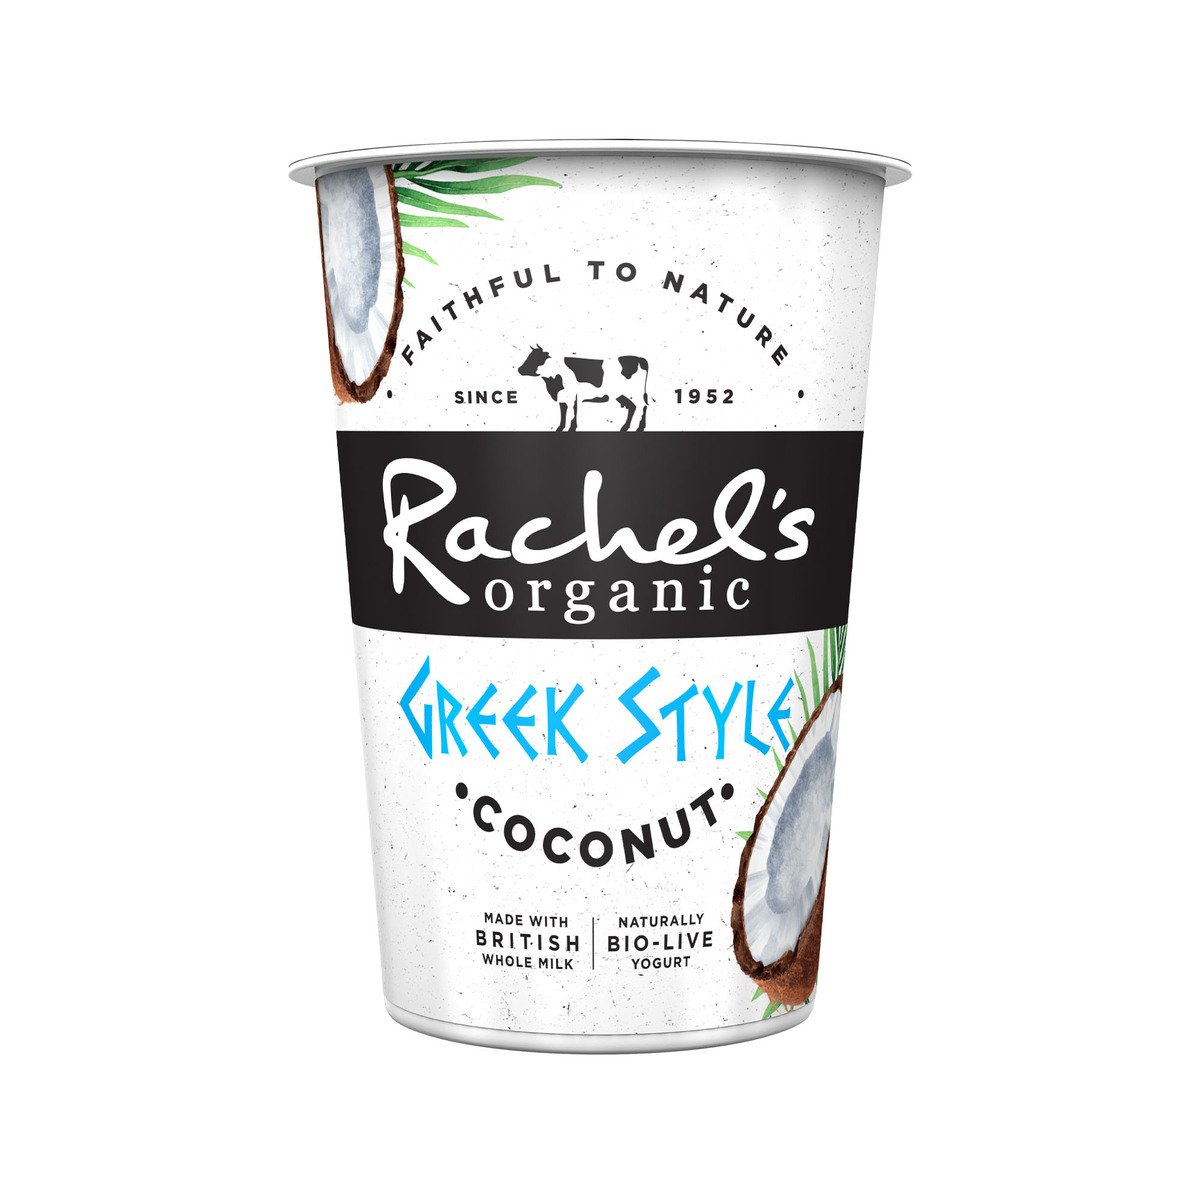 اشتري قم بشراء راتشيلز زبادي بجوز الهند عضوي على الطريقة اليونانية ، 450 جم Online at Best Price من الموقع - من لولو هايبر ماركت Flavoured Yoghurt في الامارات